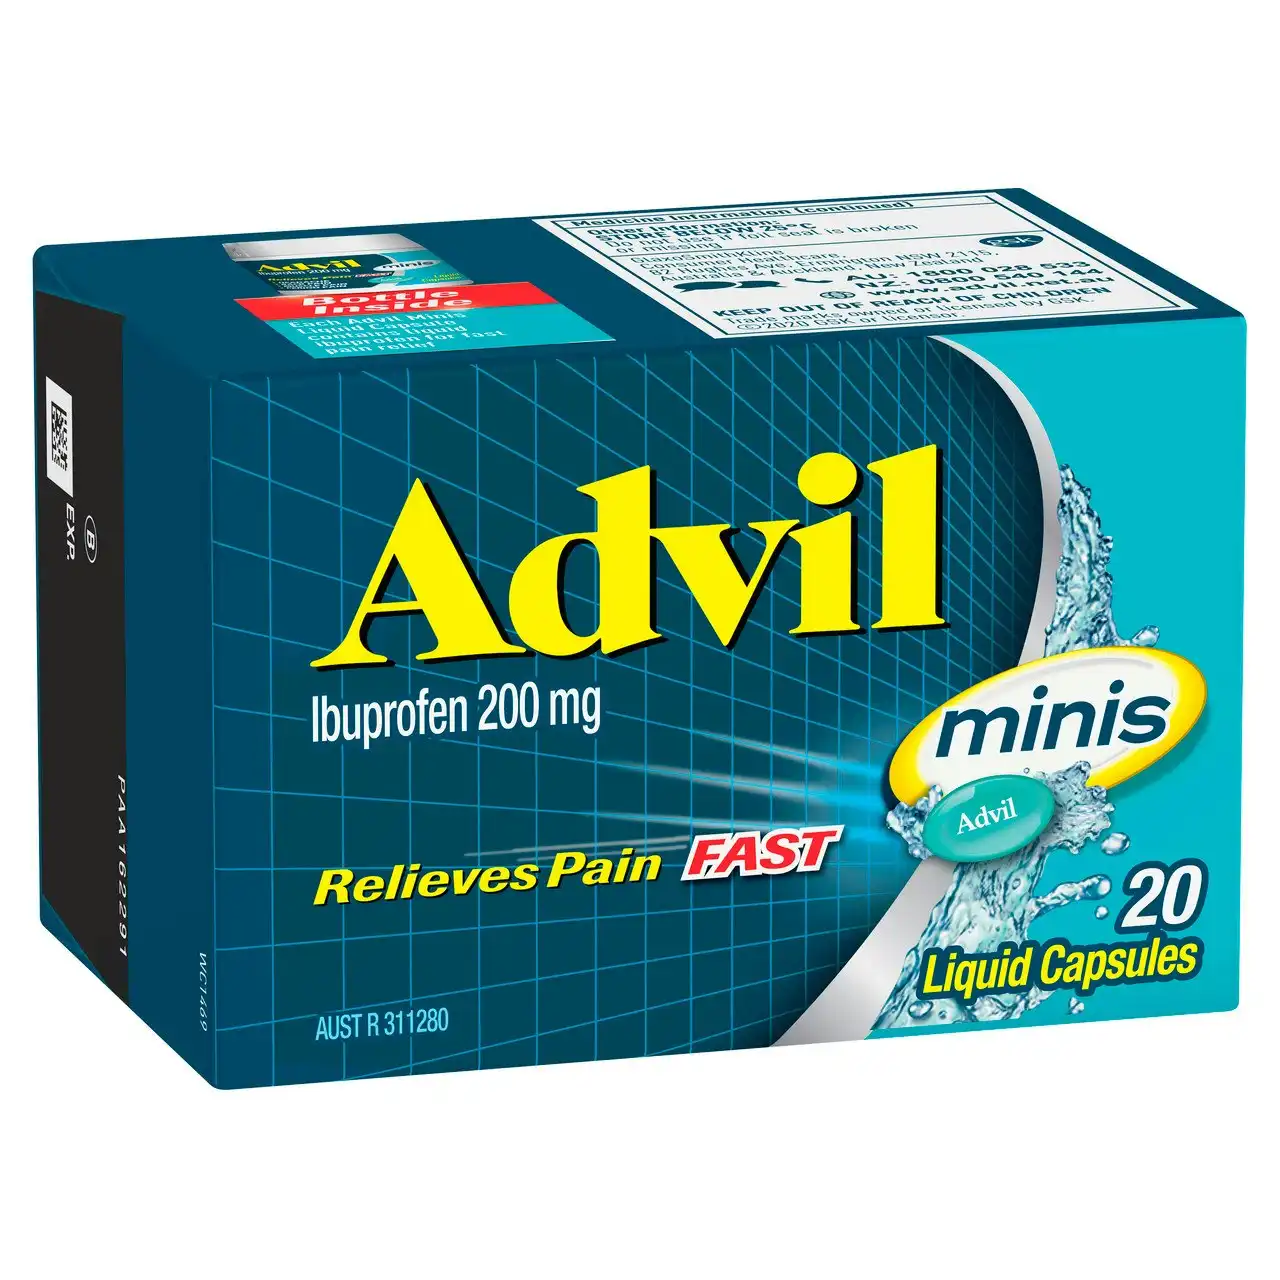 Advil Minis Liquid Capsules 20s